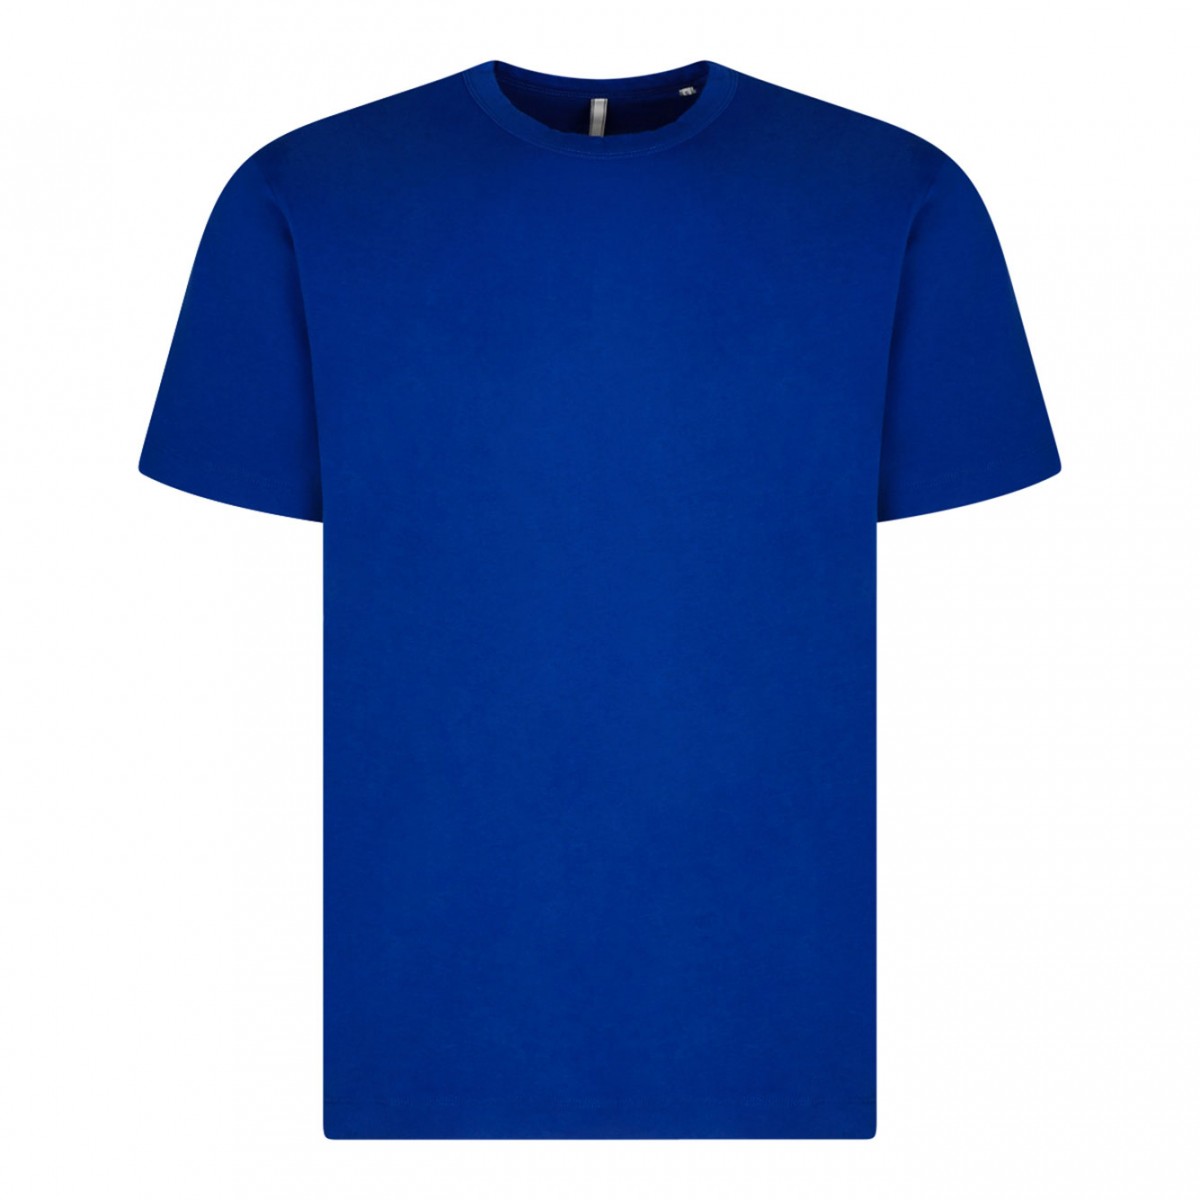 Klein Blue Cotton T-Shirt